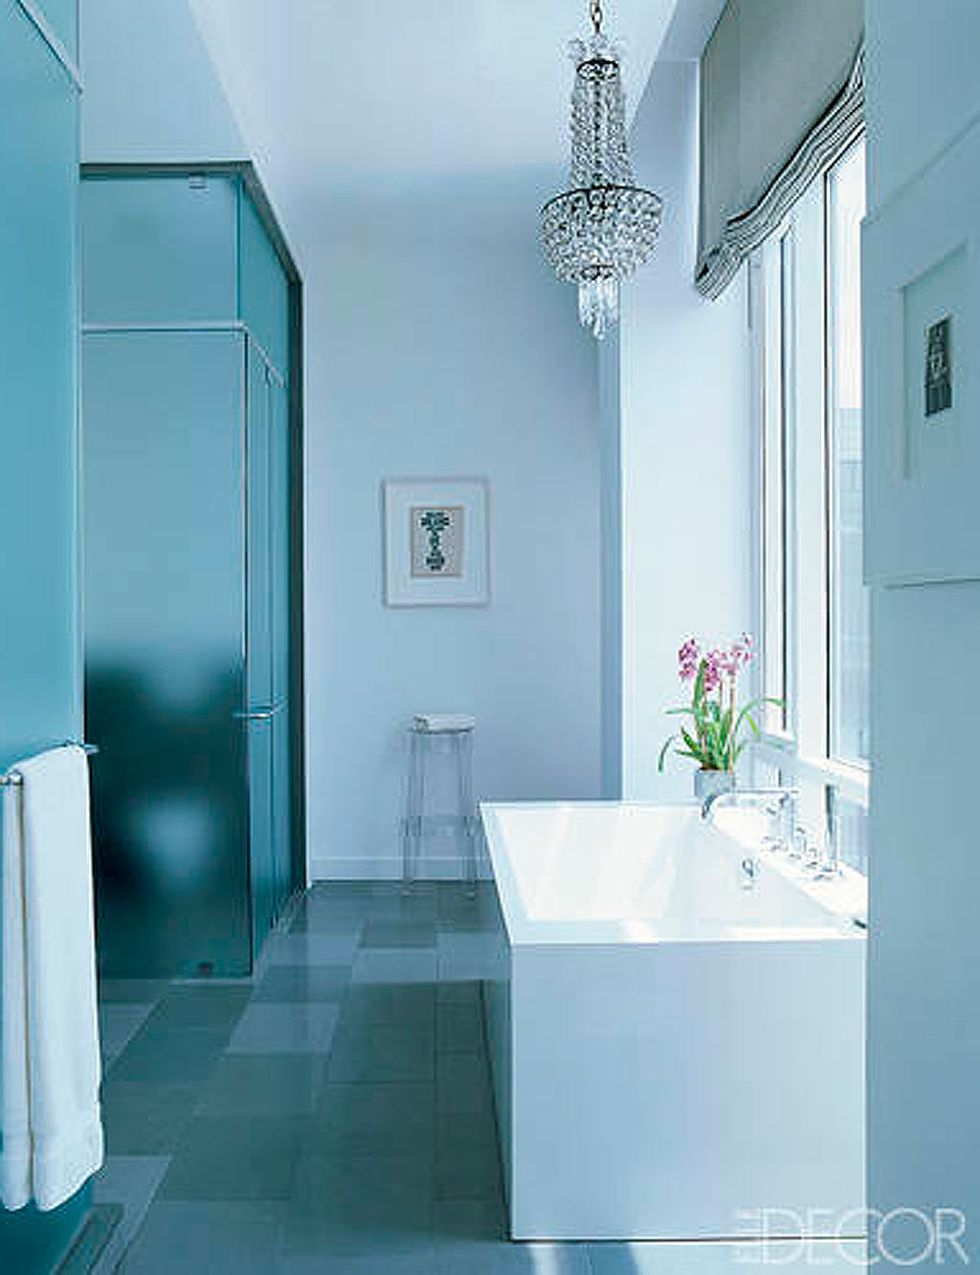 <p>En el penthouse neoyorquino del <i>fashion designer</i> Jill Stuart, el baño derrocha estilo contemporáneo con un sutil toque femenino. <a href="http://www.elledecor.com/decorating/articles/home_jill_stuart" target="_blank">Mira su casa.</a></p>